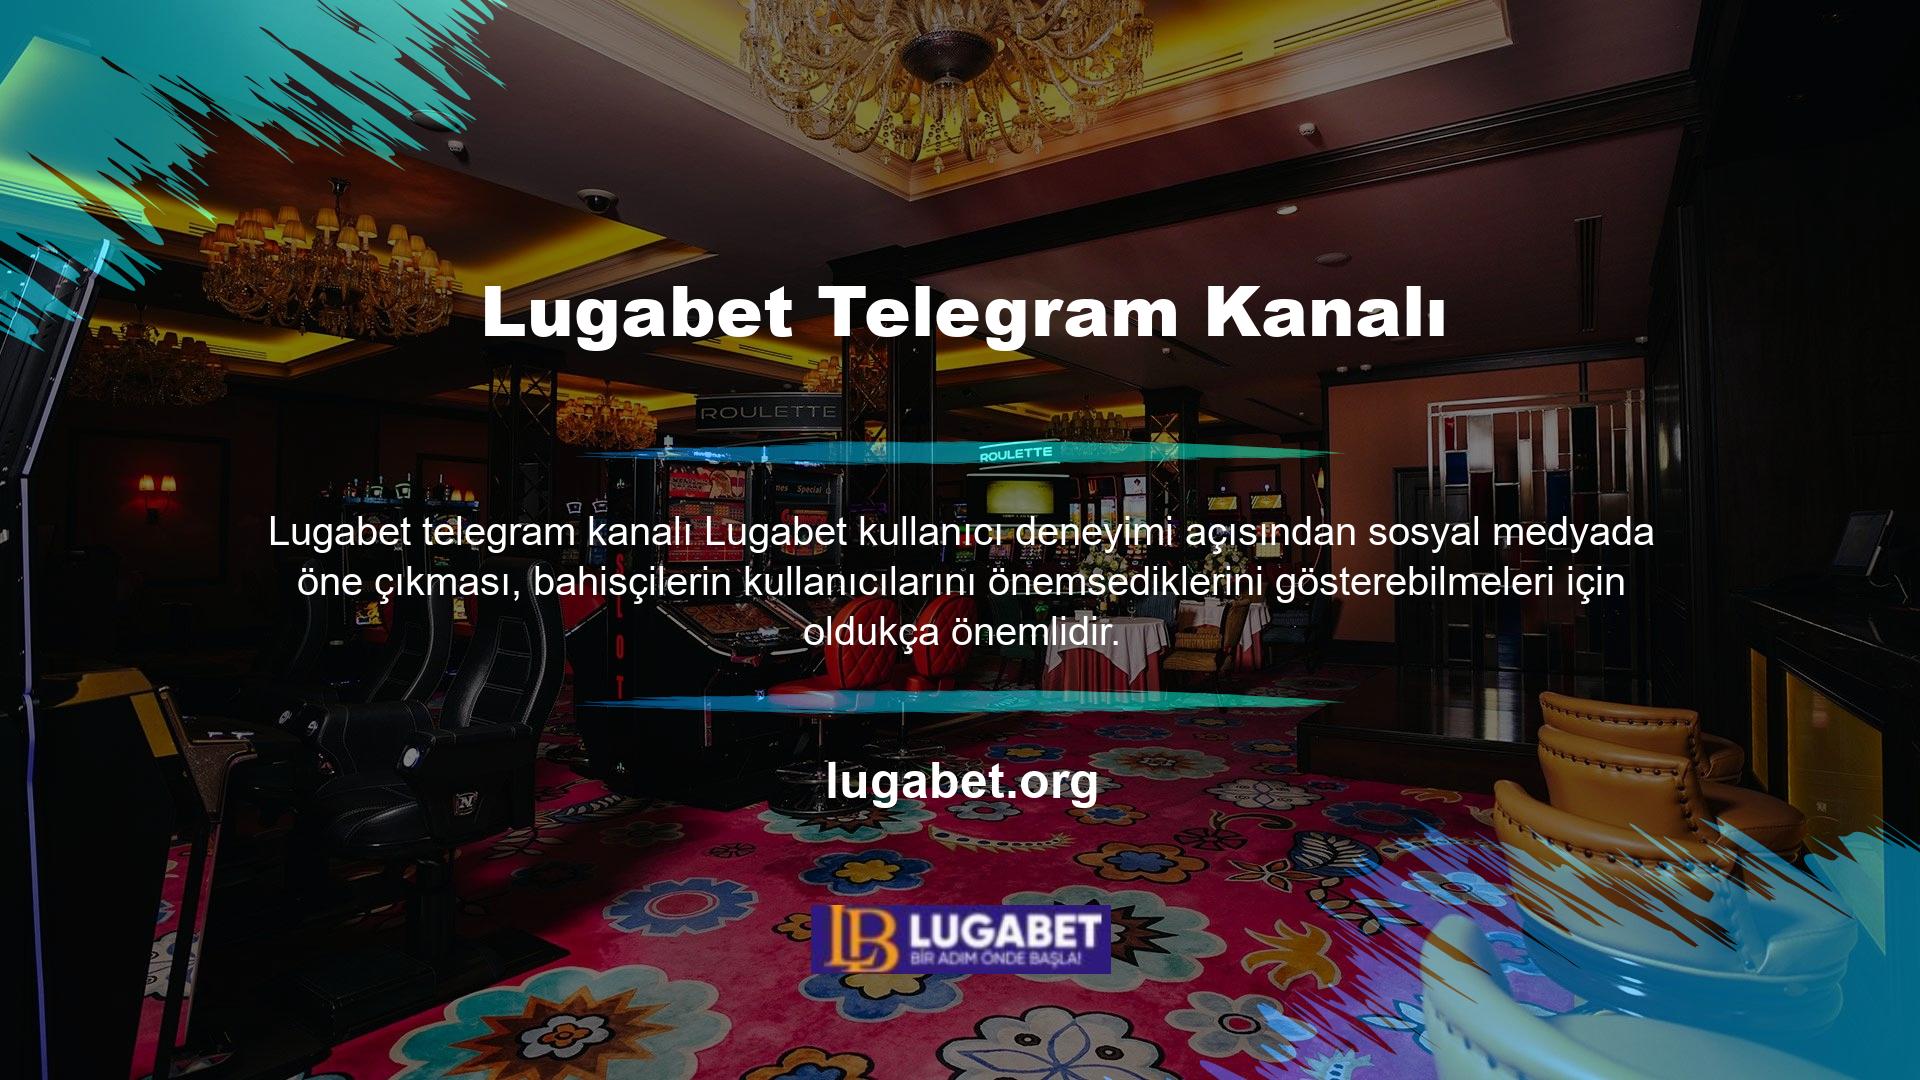 Lugabet müşteri destek ekibi, sitenin yardım bölümü üzerinden ve ayrıca Lugabet Telegram kanalı üzerinden 7/24 canlı destek sunmaktadır